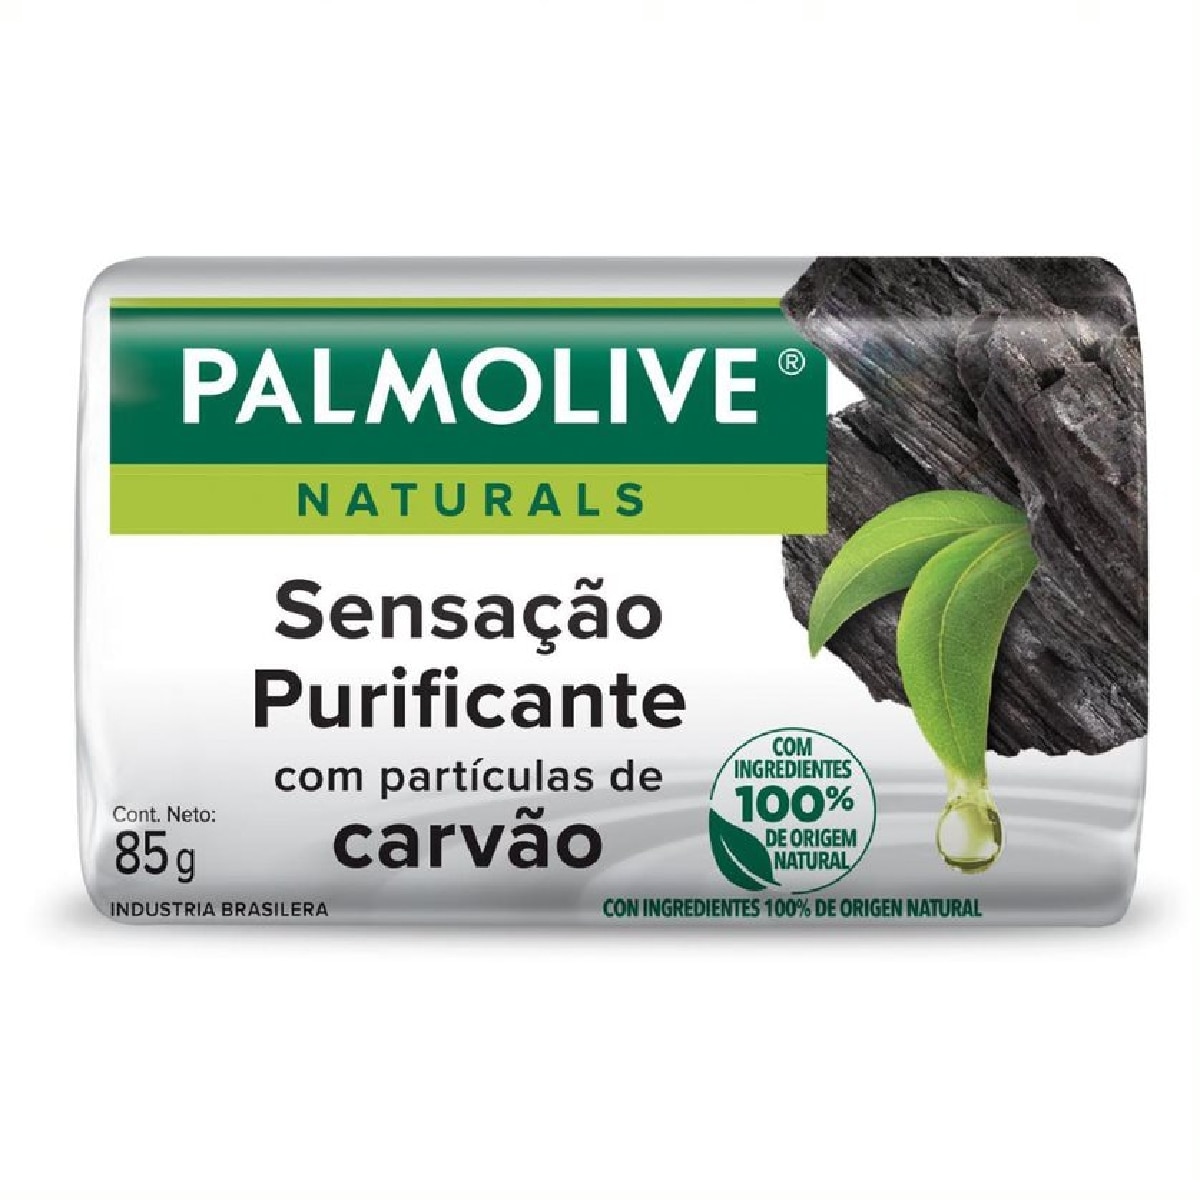 Sabonete em Barra Palmolive Naturals Sensacao Purificante 85g